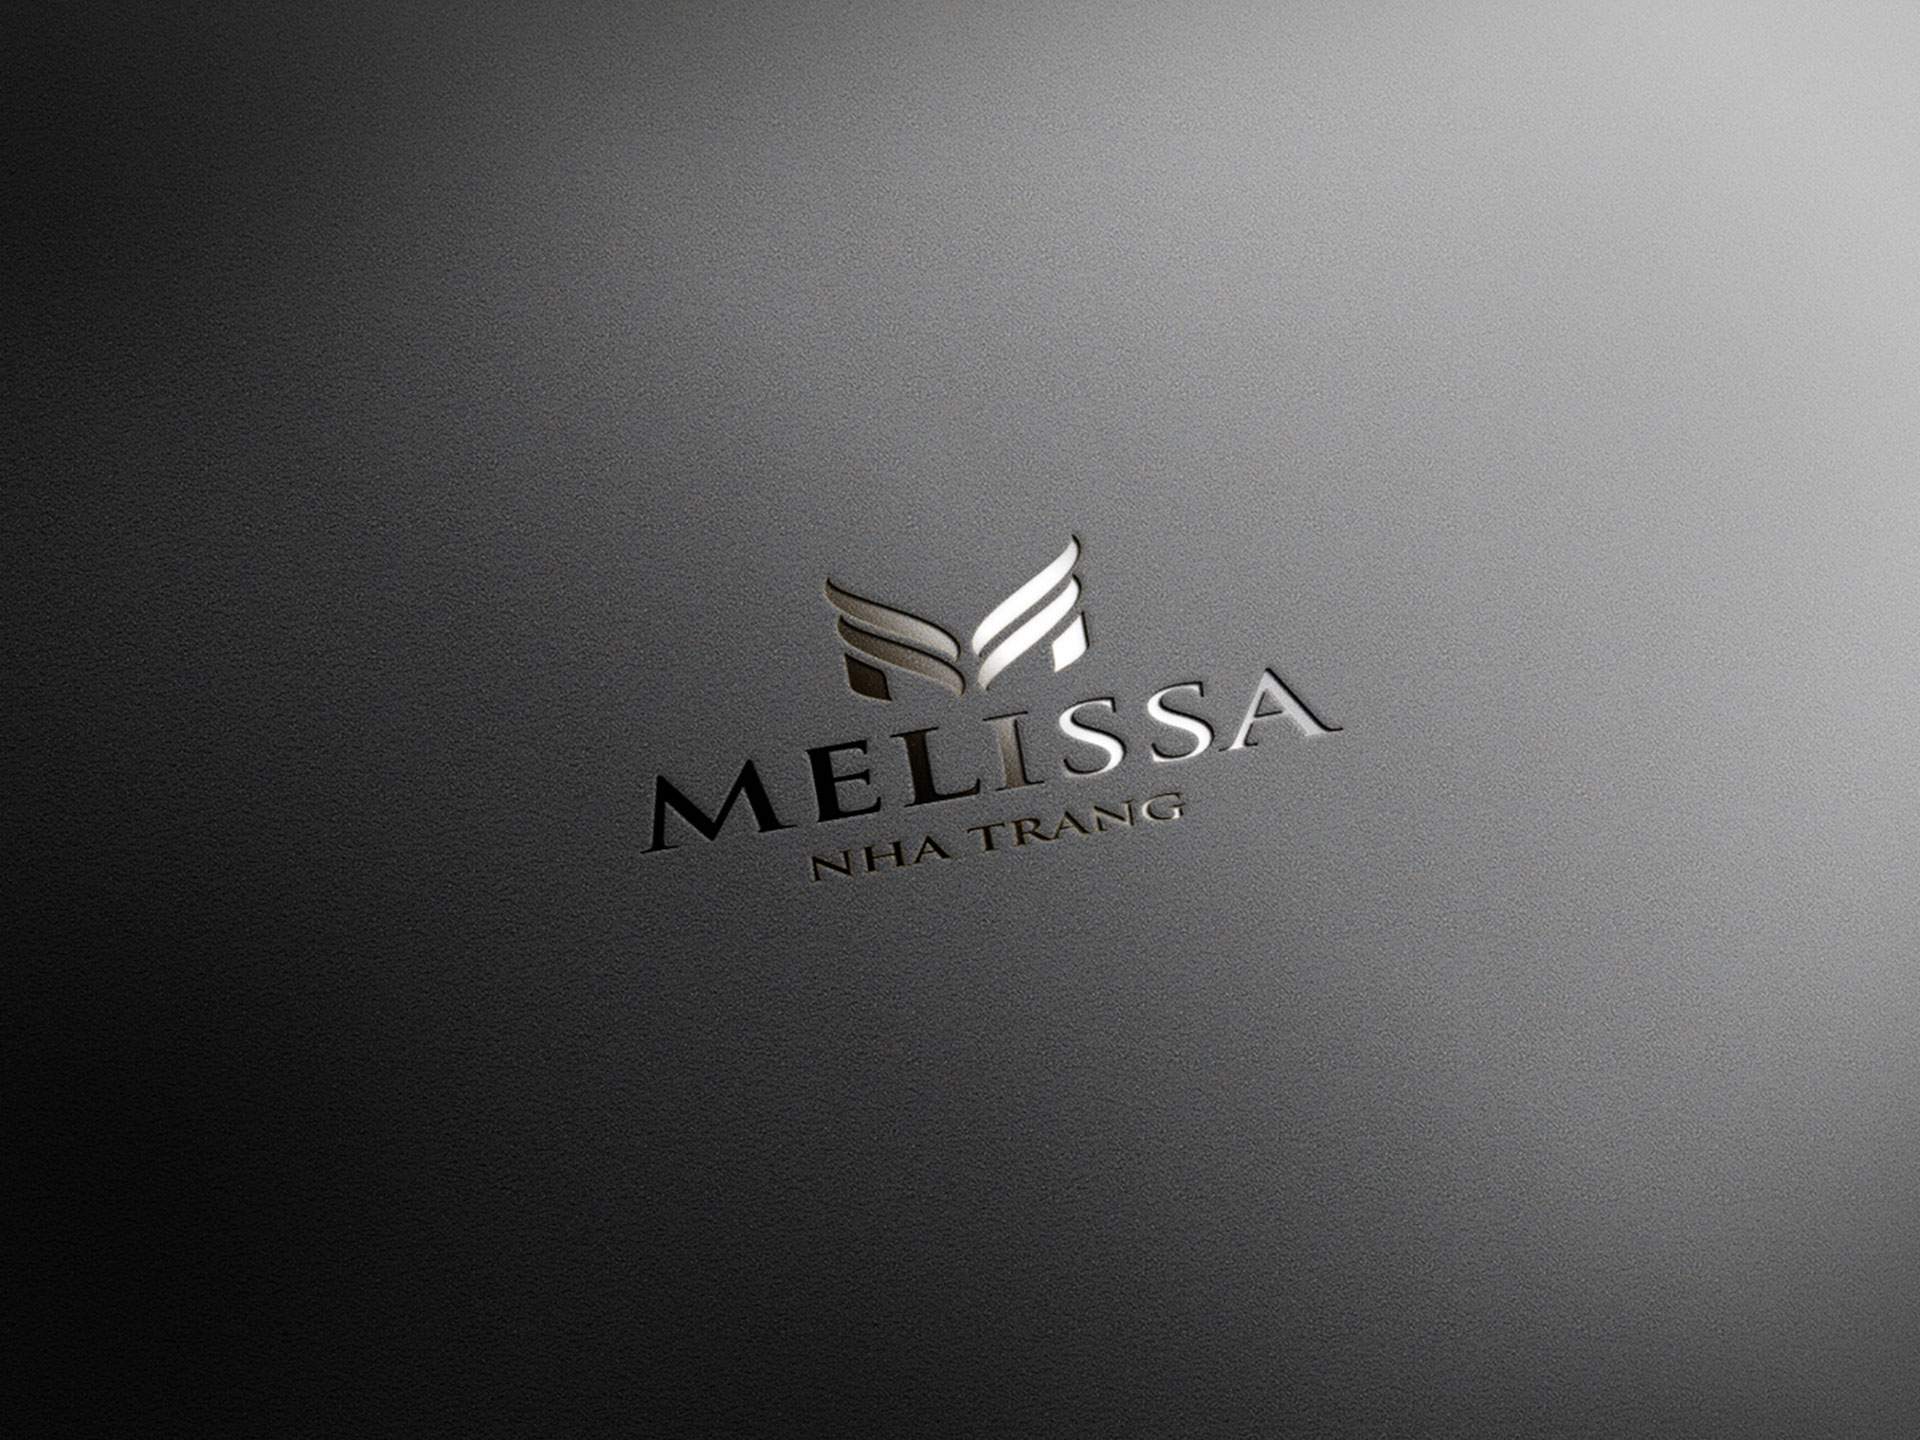 Case Study: Đặt tên, Thiết Kế Logo Và Bộ Nhận Diện Thương Hiệu Khách Sạn 3 Sao Melissa 5